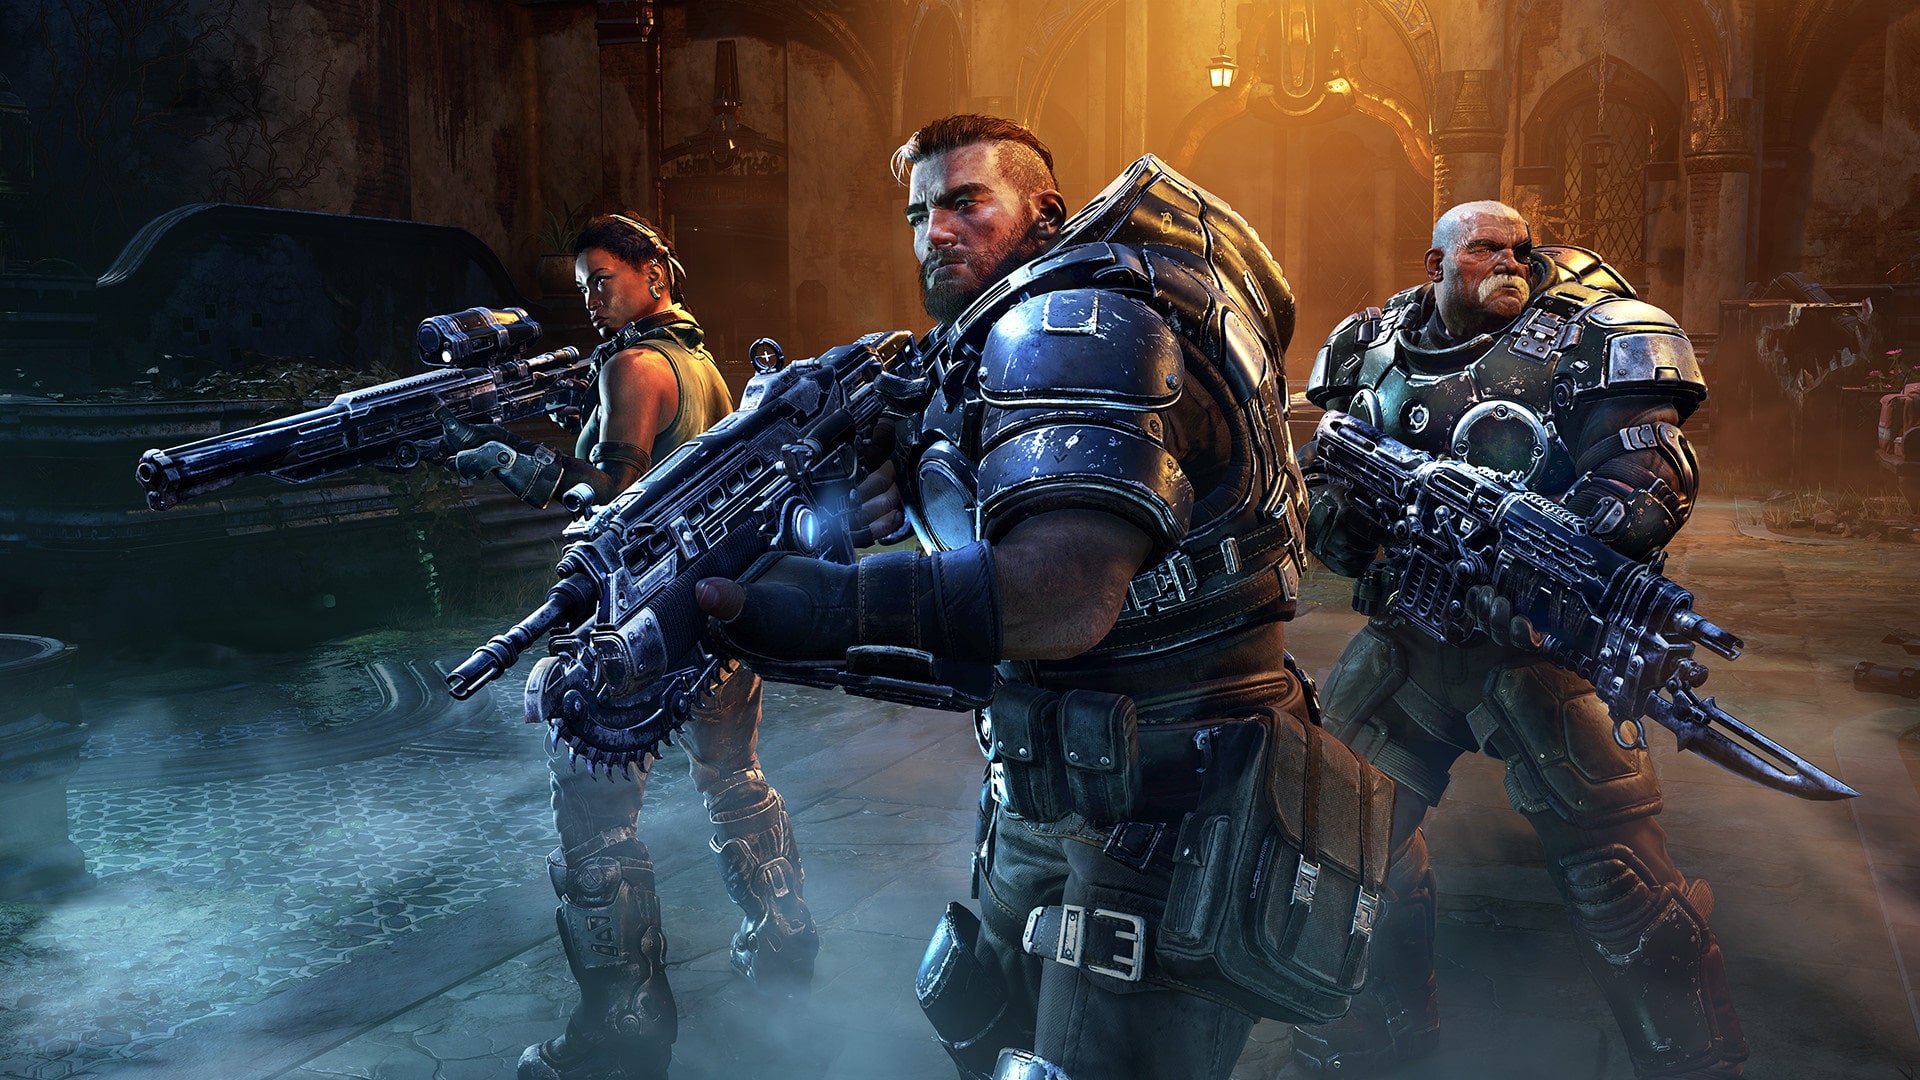 Gears of War 4: Requisitos mínimos y recomendados en PC